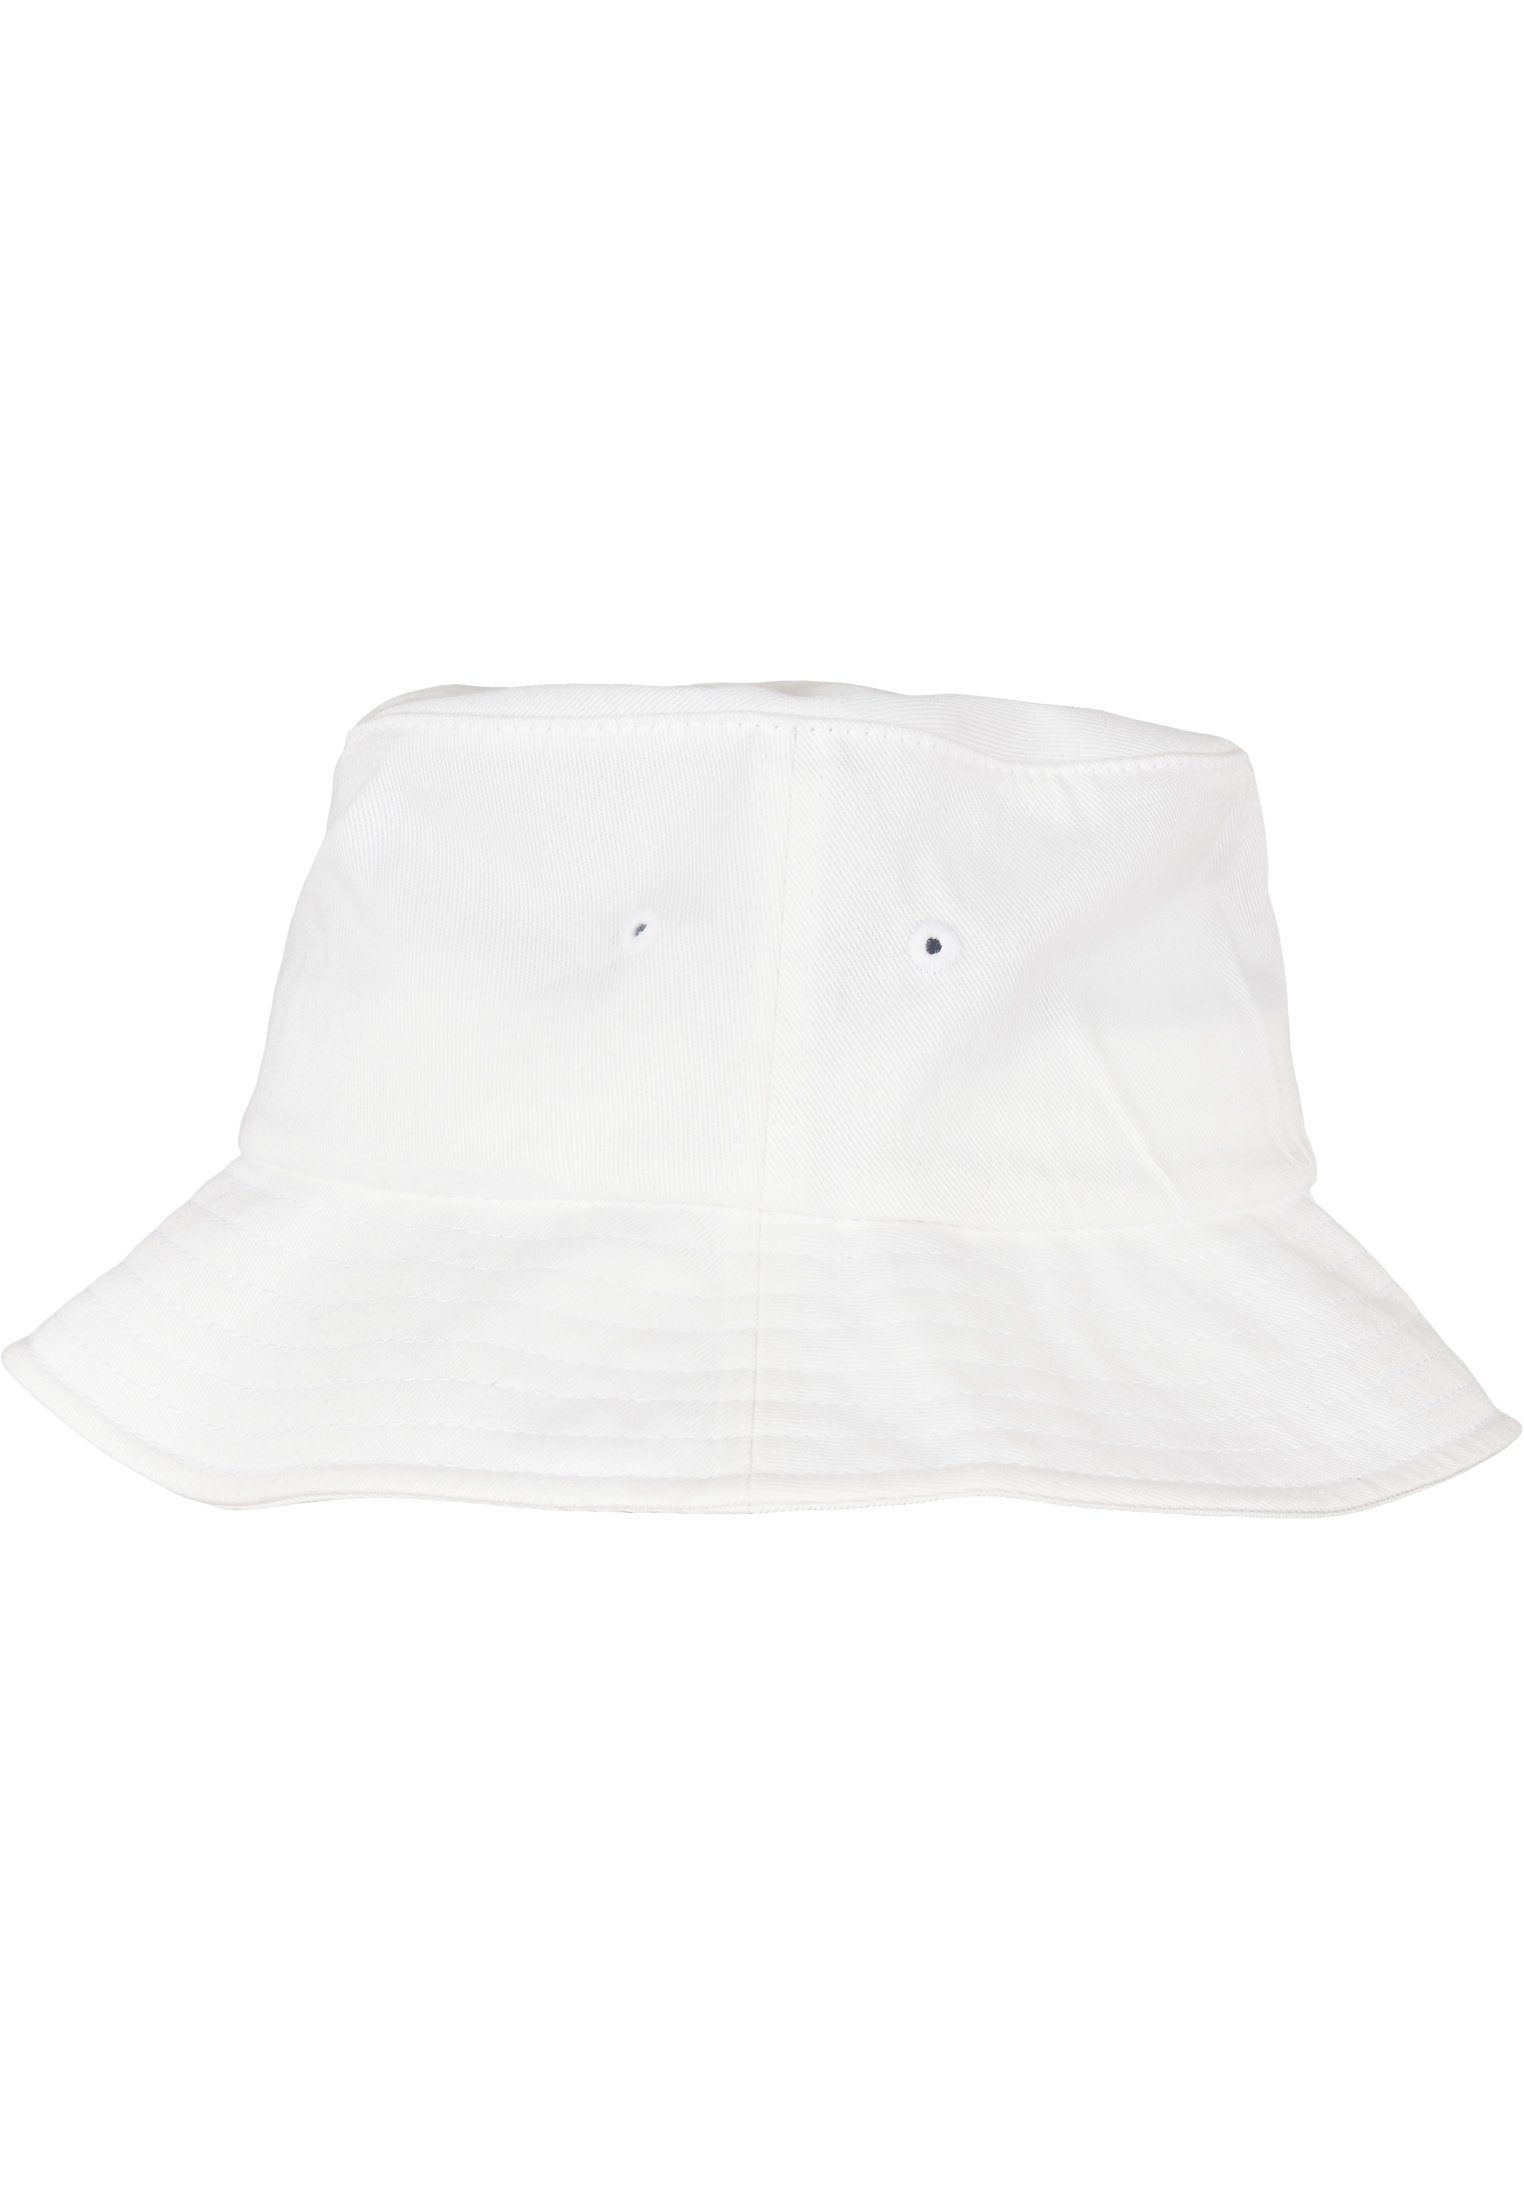 Flexfit Flex Accessoires Bucket Cotton white Organic Cap Hat